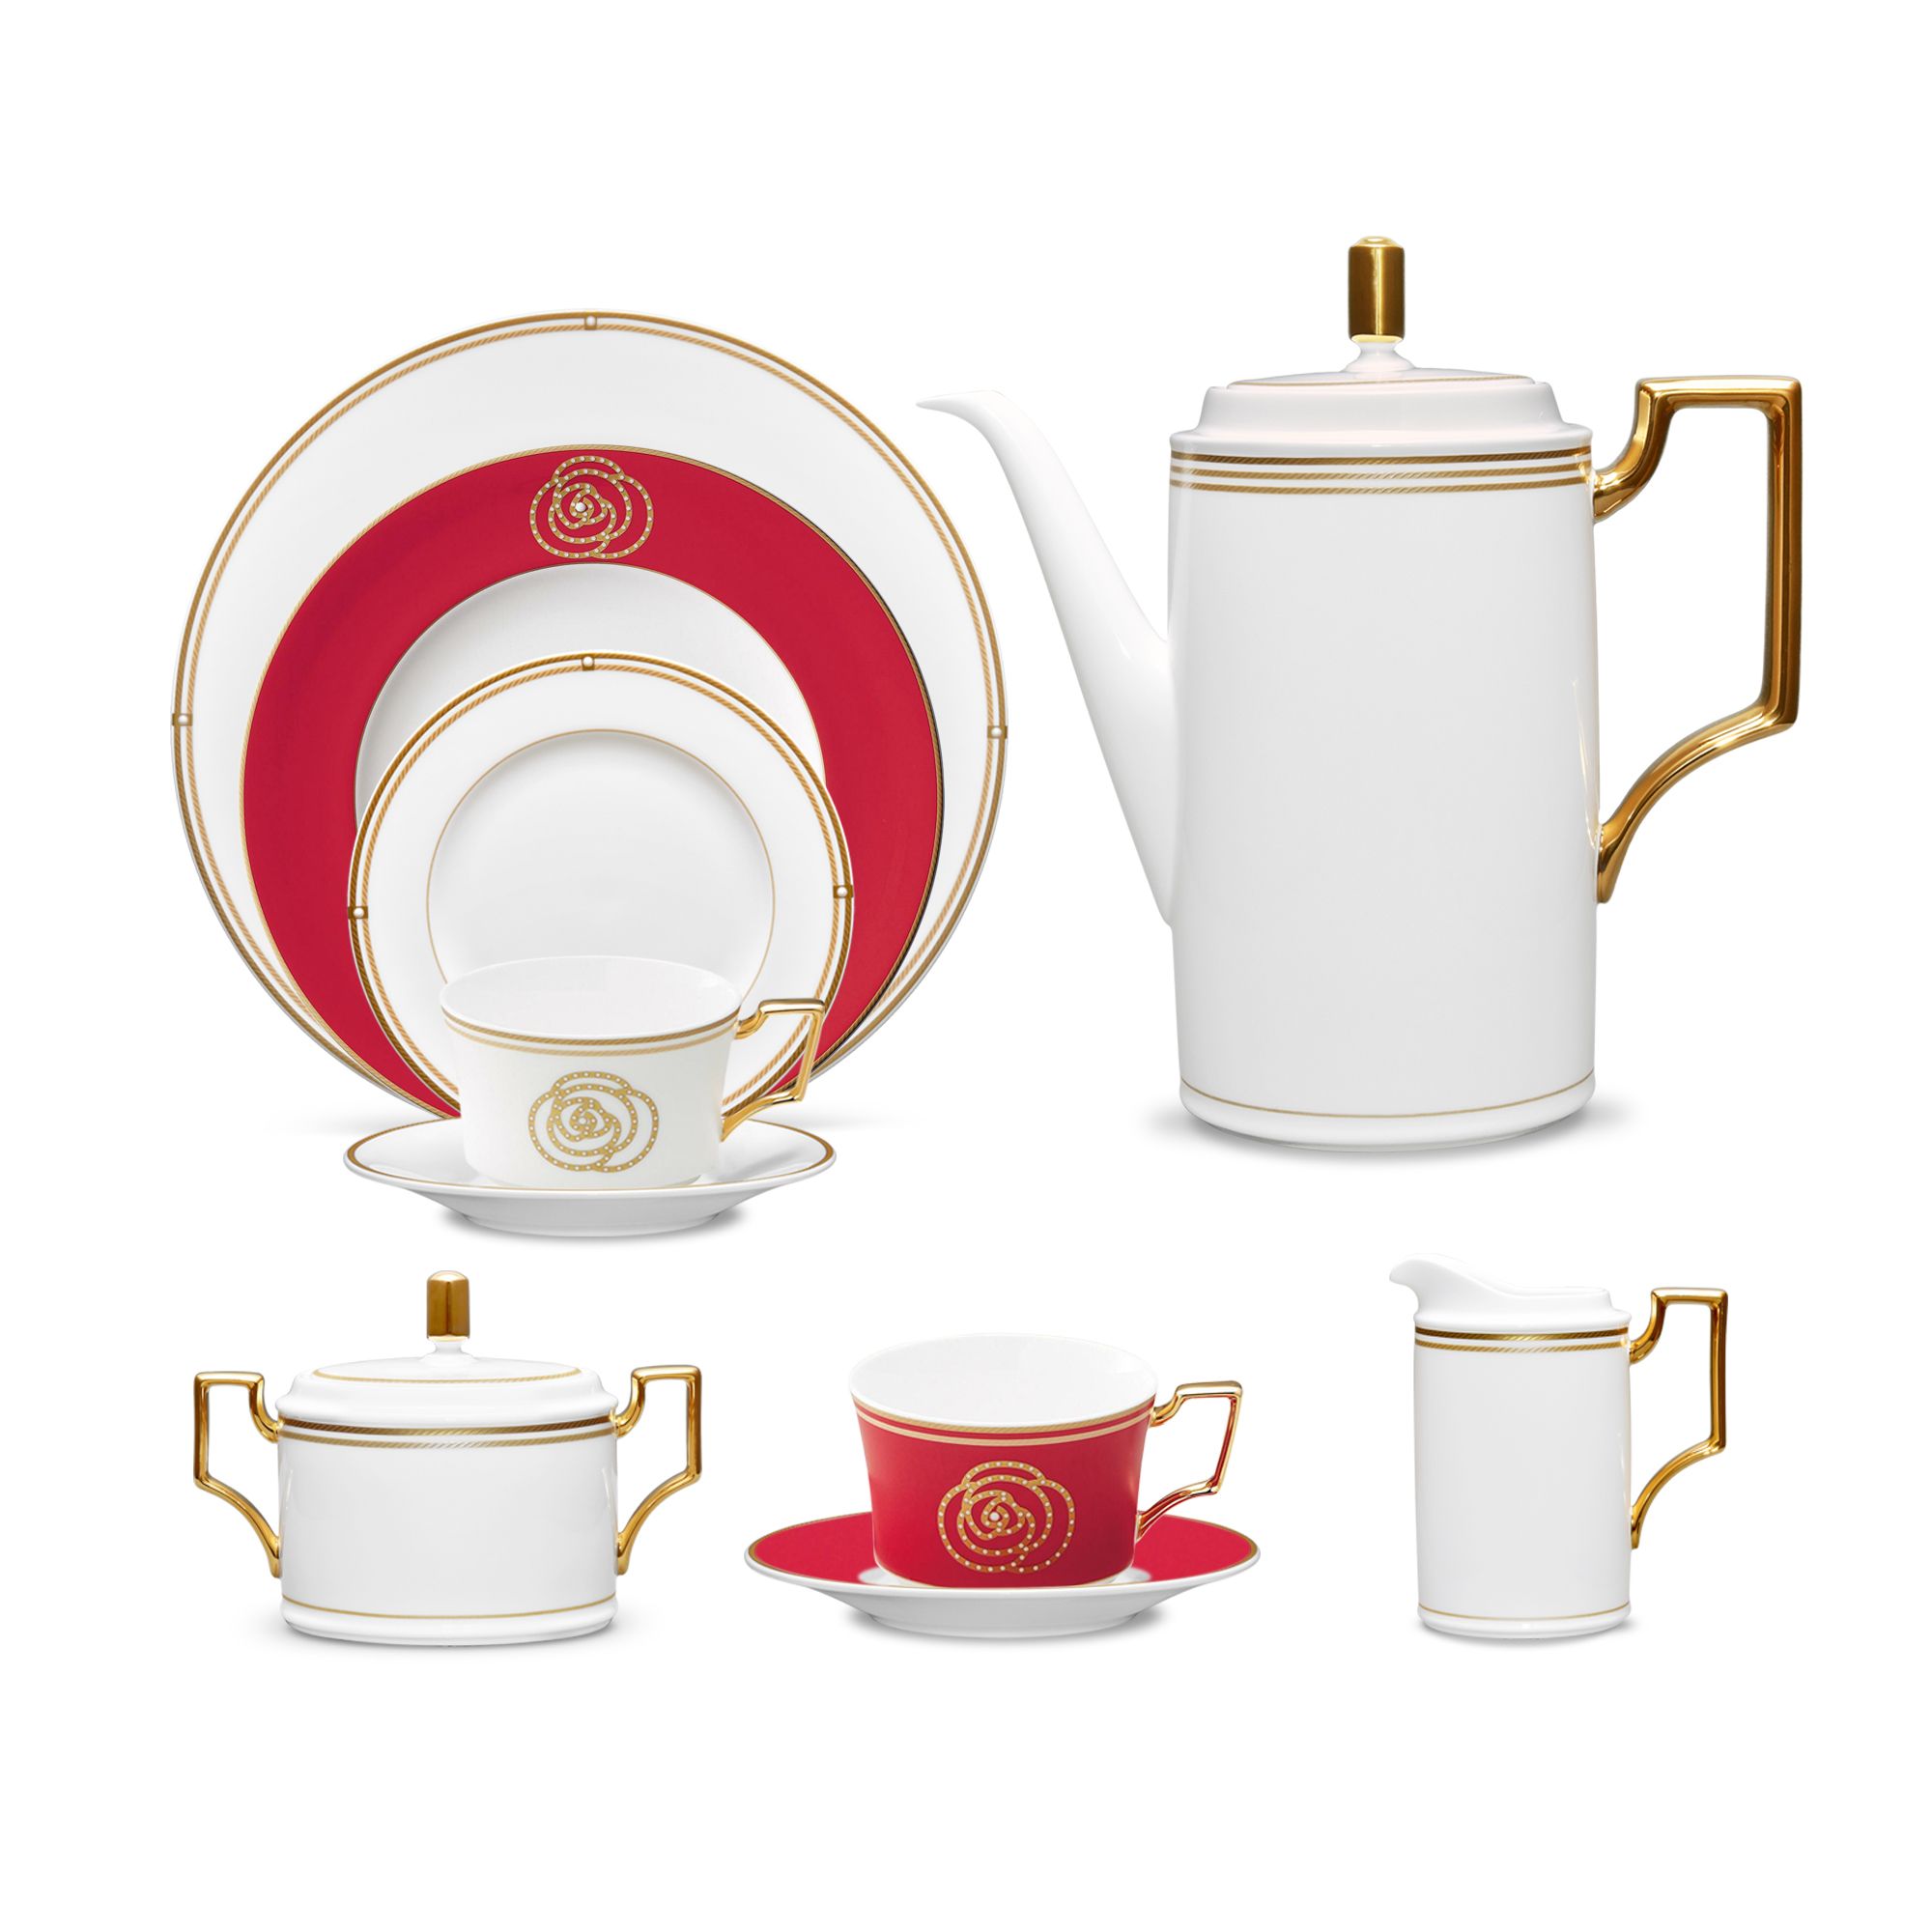  Bộ ấm chén uống trà đầy đủ 18 món ( Bình trà dung tích 1.650ml, đĩa nhấn đỏ) | Aidan Gold 4941 